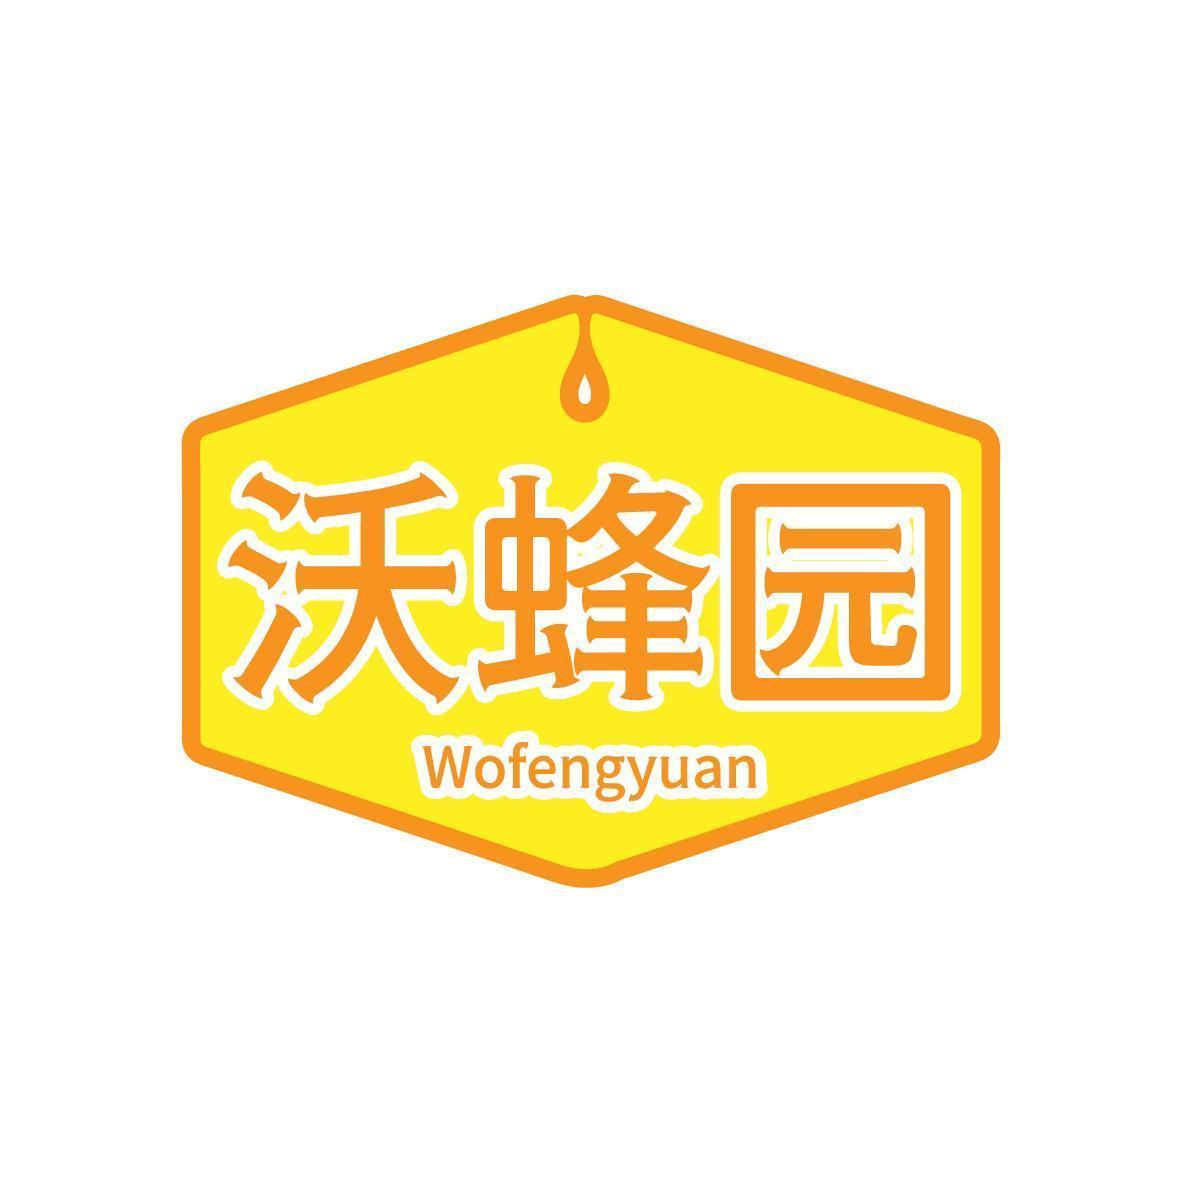 沃蜂园 Wofengyuan